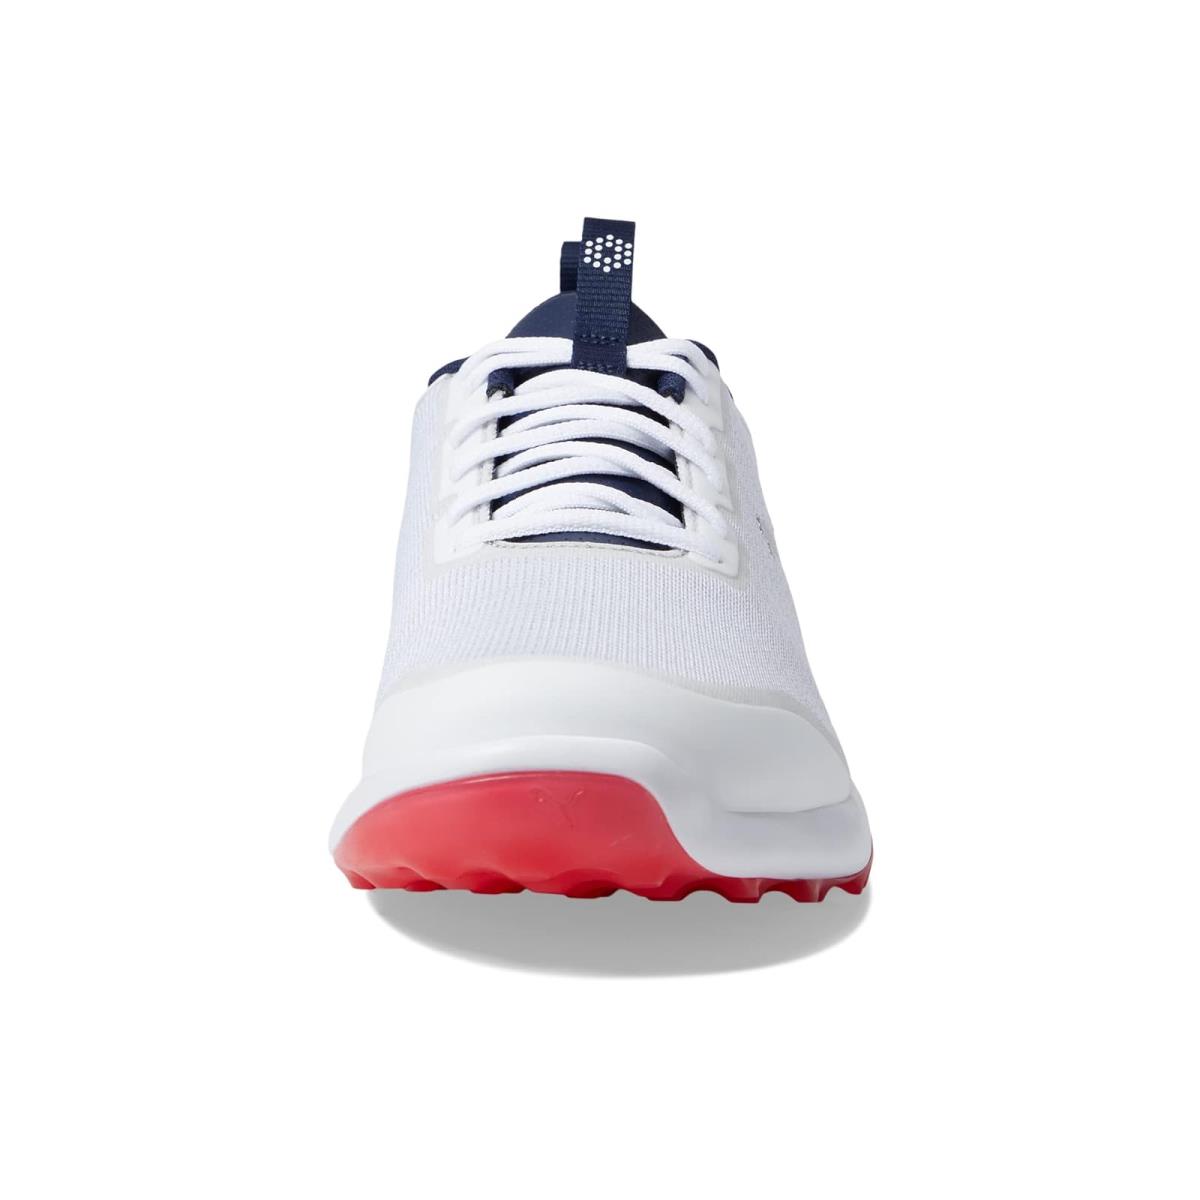 Puma shoes  - Puma White/Puma Navy/For All Time Red 3